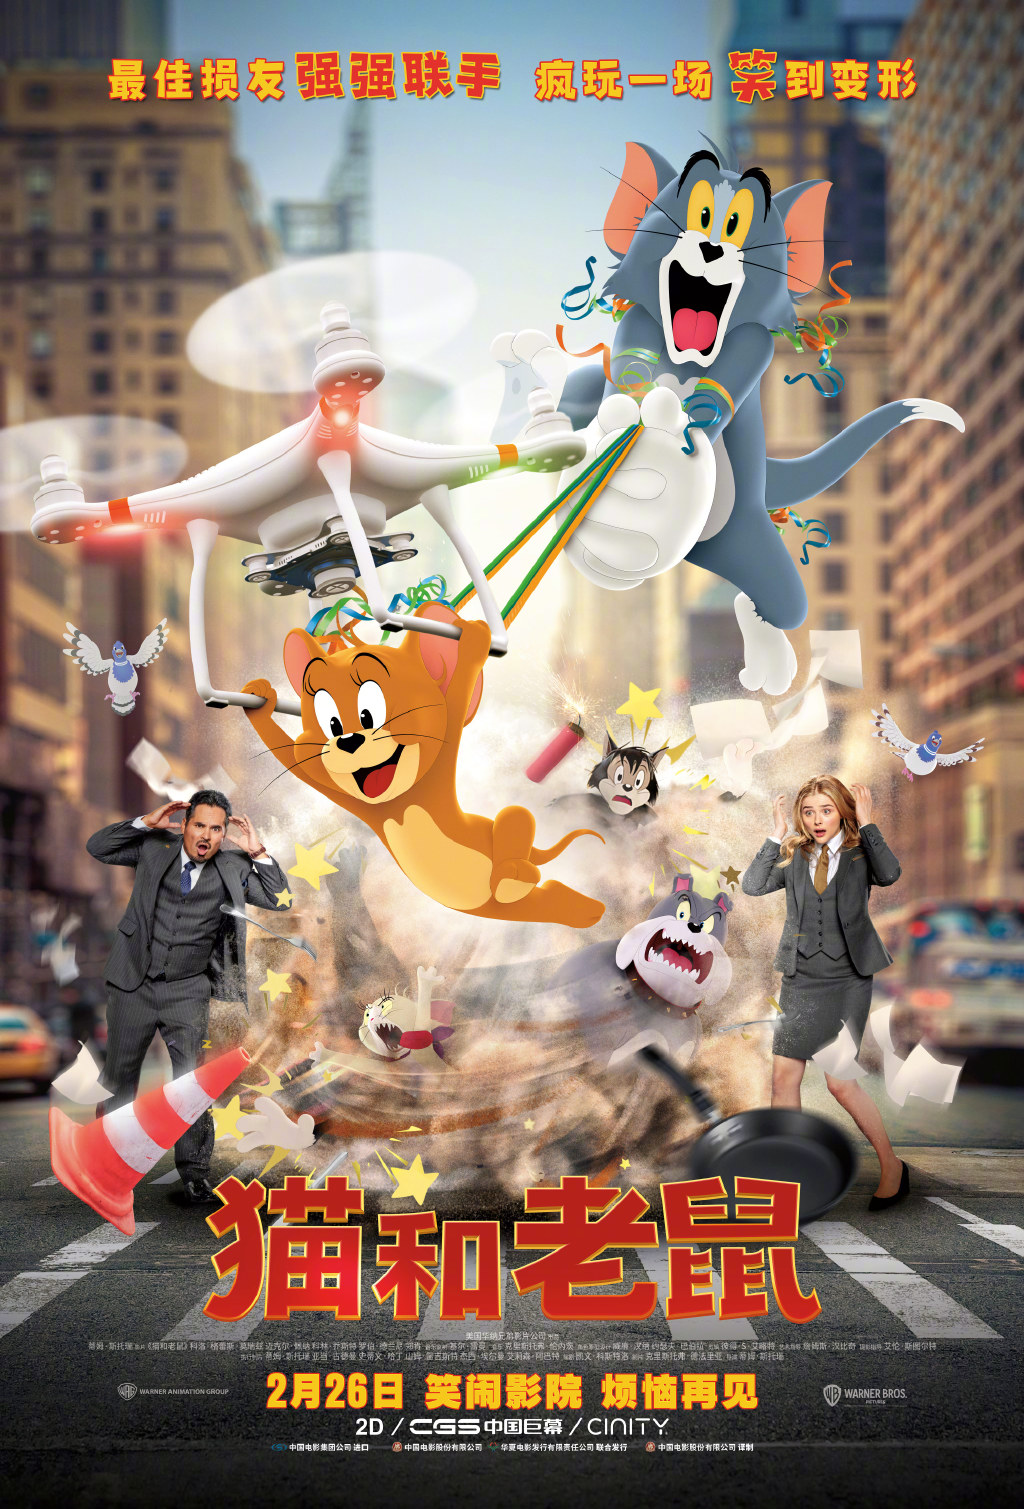 《猫和老鼠》真人电影发布中国独家预告 汤姆杰瑞相爱